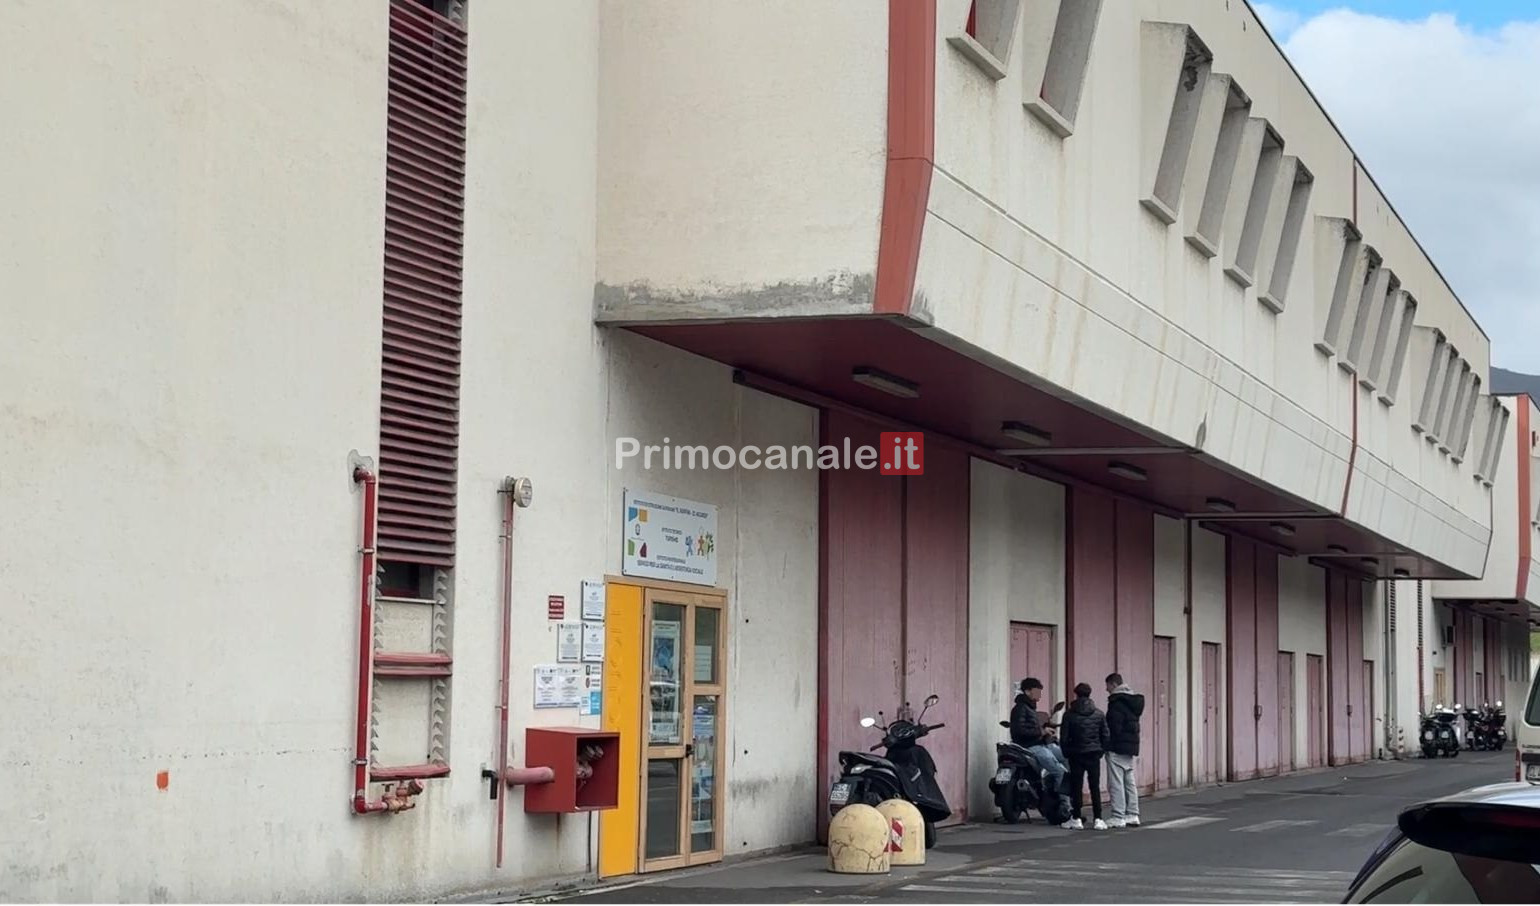 Incidente mortale a Sanremo: i genitori in presidio davanti alla scuola per chiedere sicurezza